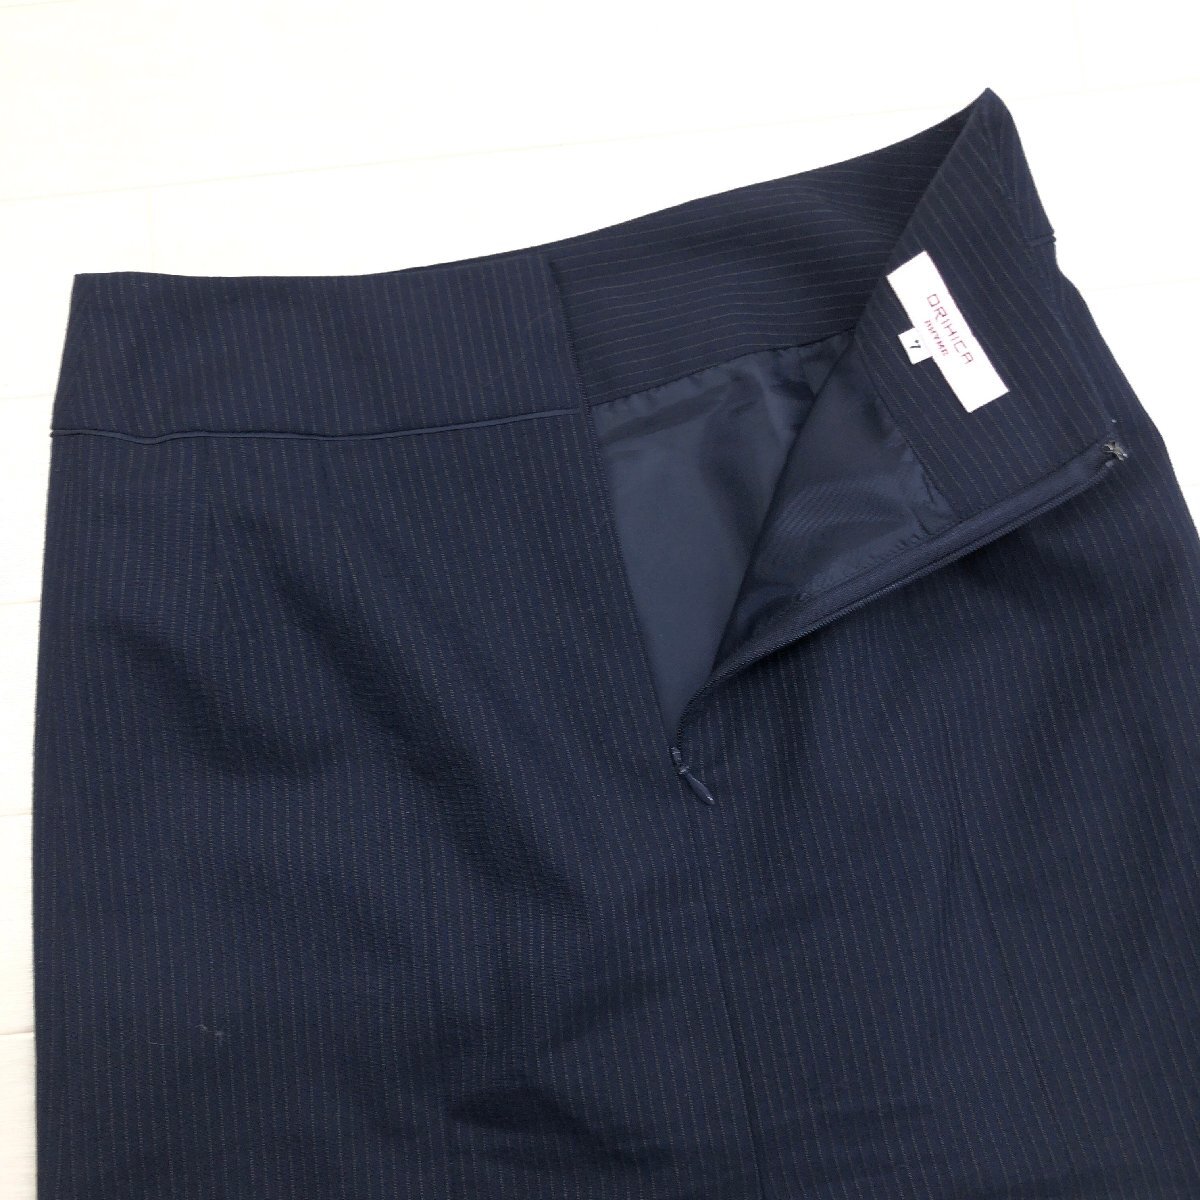 ●ORIHICA RHYME オリヒカ ウォッシャブル 1B スカートスーツ 7(S) 濃紺 ネイビー ジャケット 七分袖 春夏用 国内正規品 レディース 女性用の画像7